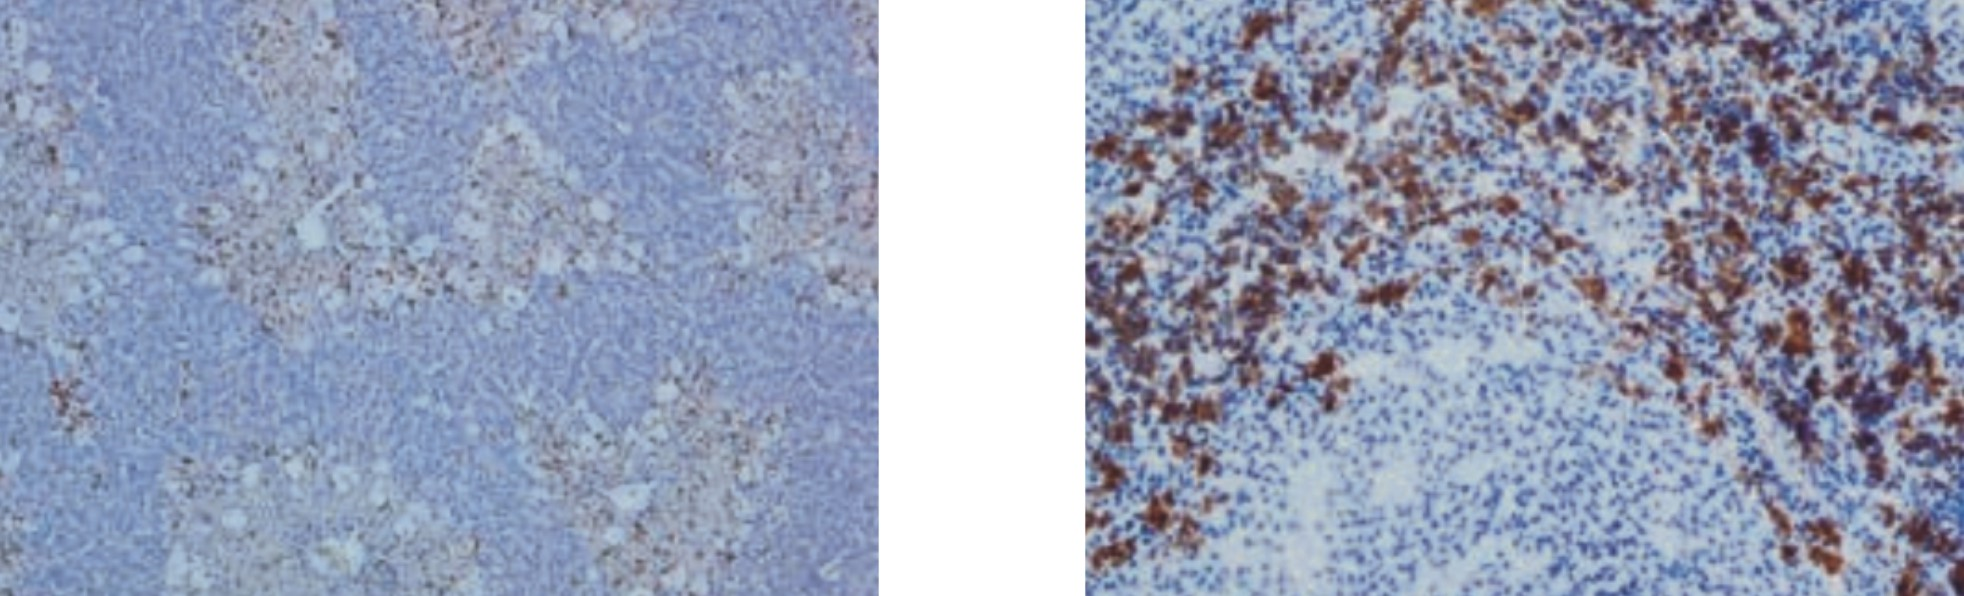 天然免疫学热点领域科研抗体(AbD Serotec®)---经典大鼠CD分子抗体